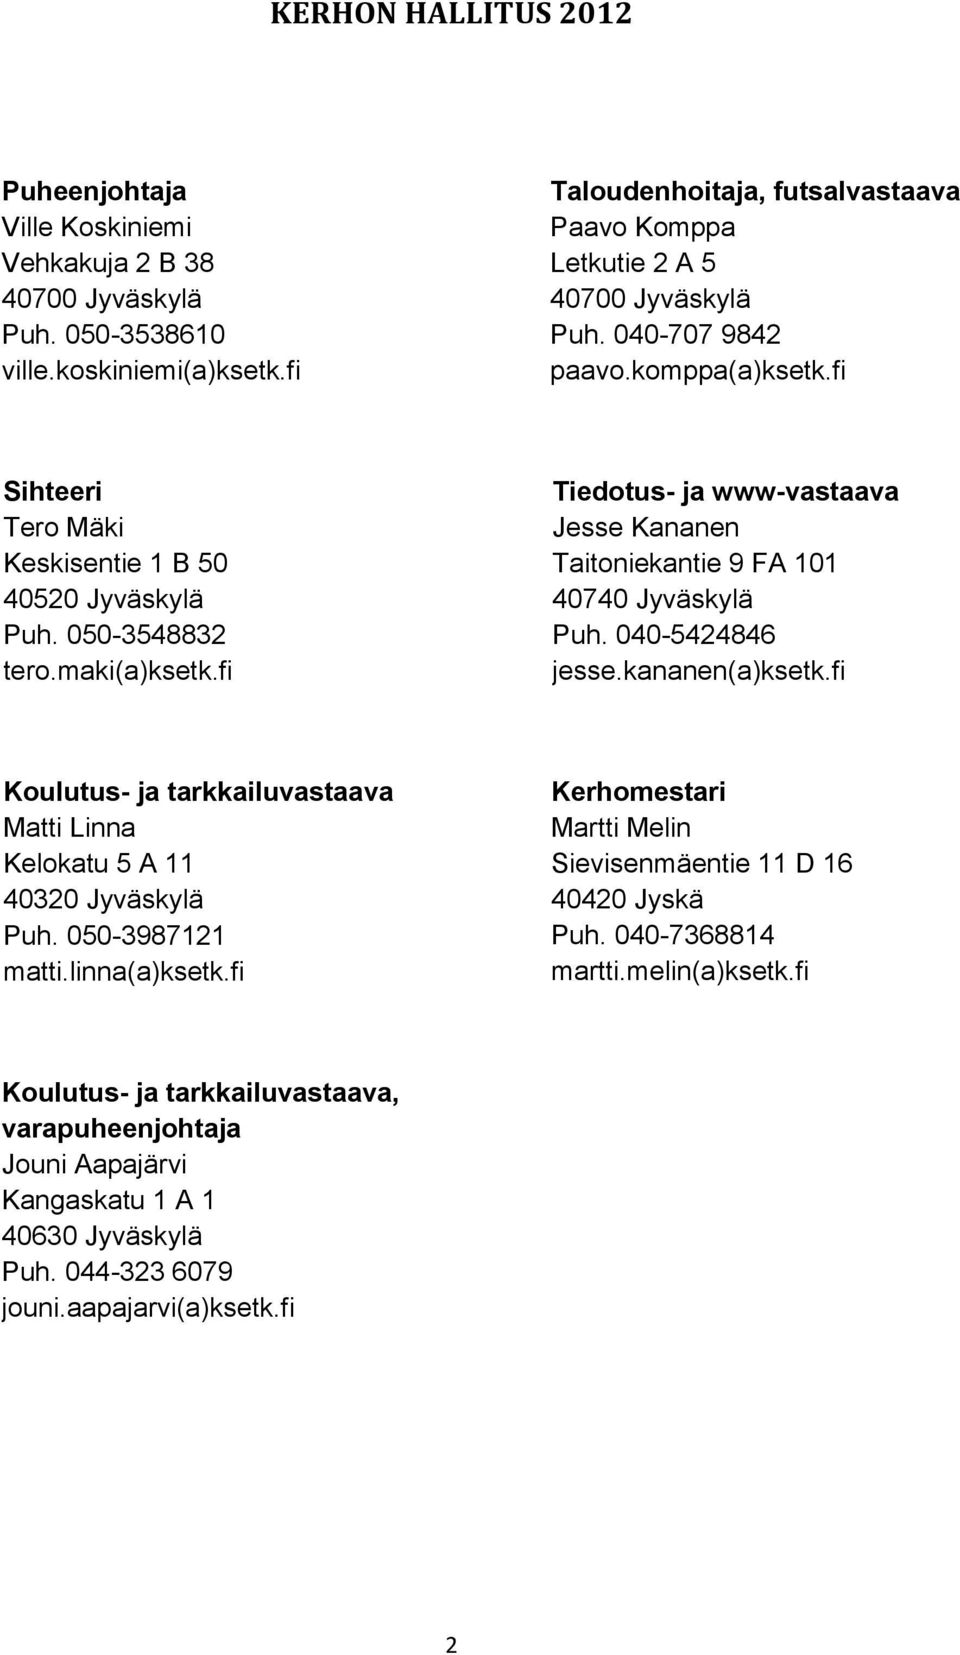 maki(a)ksetk.fi Tiedotus- ja www-vastaava Jesse Kananen Taitoniekantie 9 FA 101 40740 Jyväskylä Puh. 040-5424846 jesse.kananen(a)ksetk.